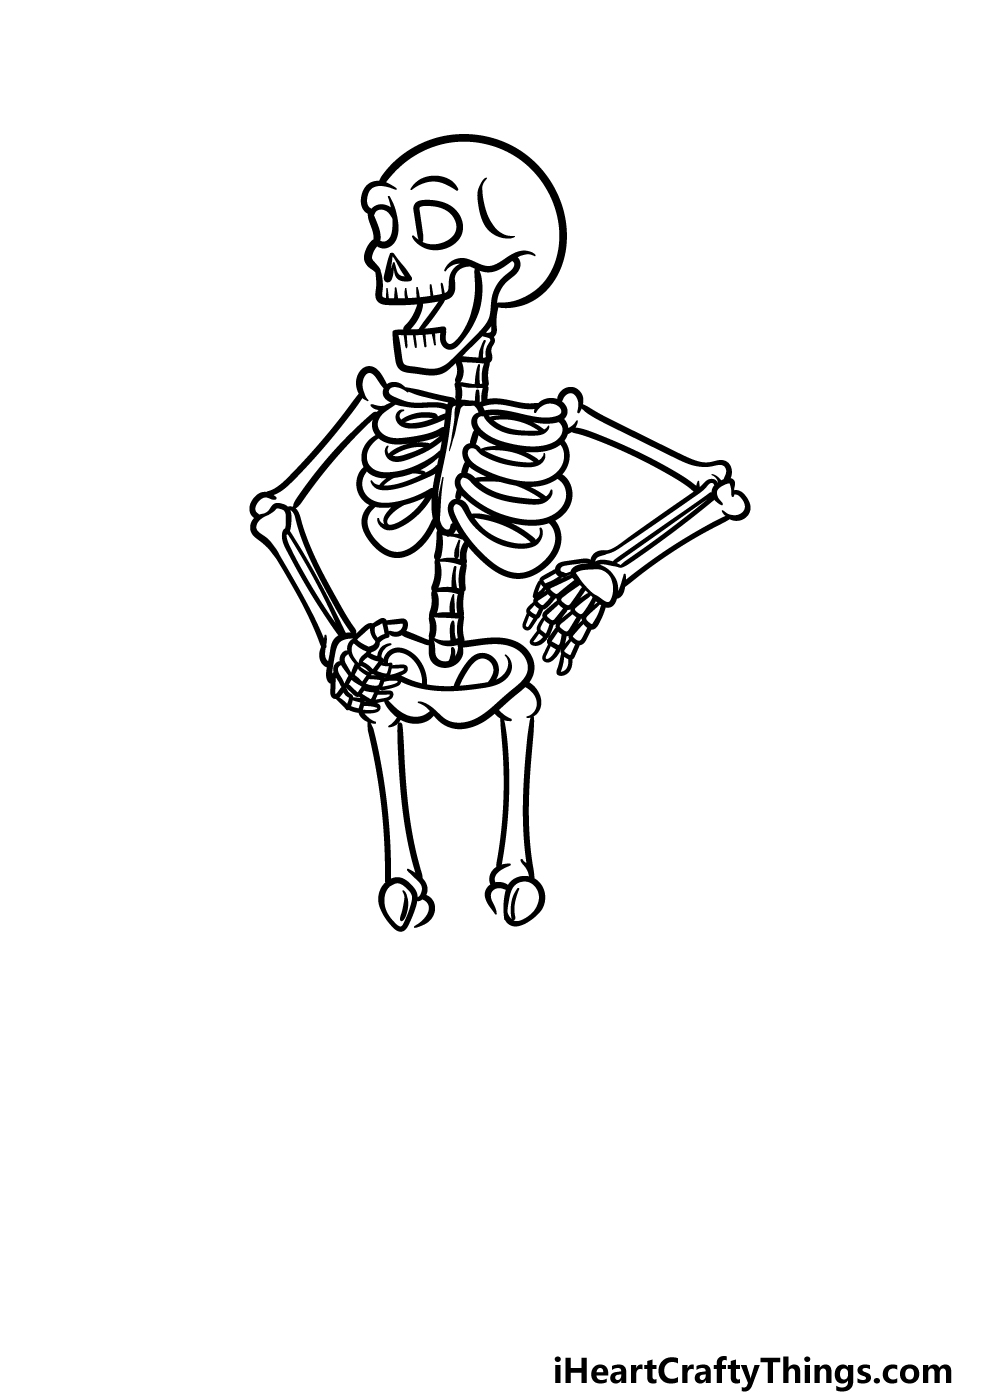 Skeleton Cute Stock Illustrations  16890 Skeleton Cute Stock  Illustrations Vectors  Clipart  Dreamstime